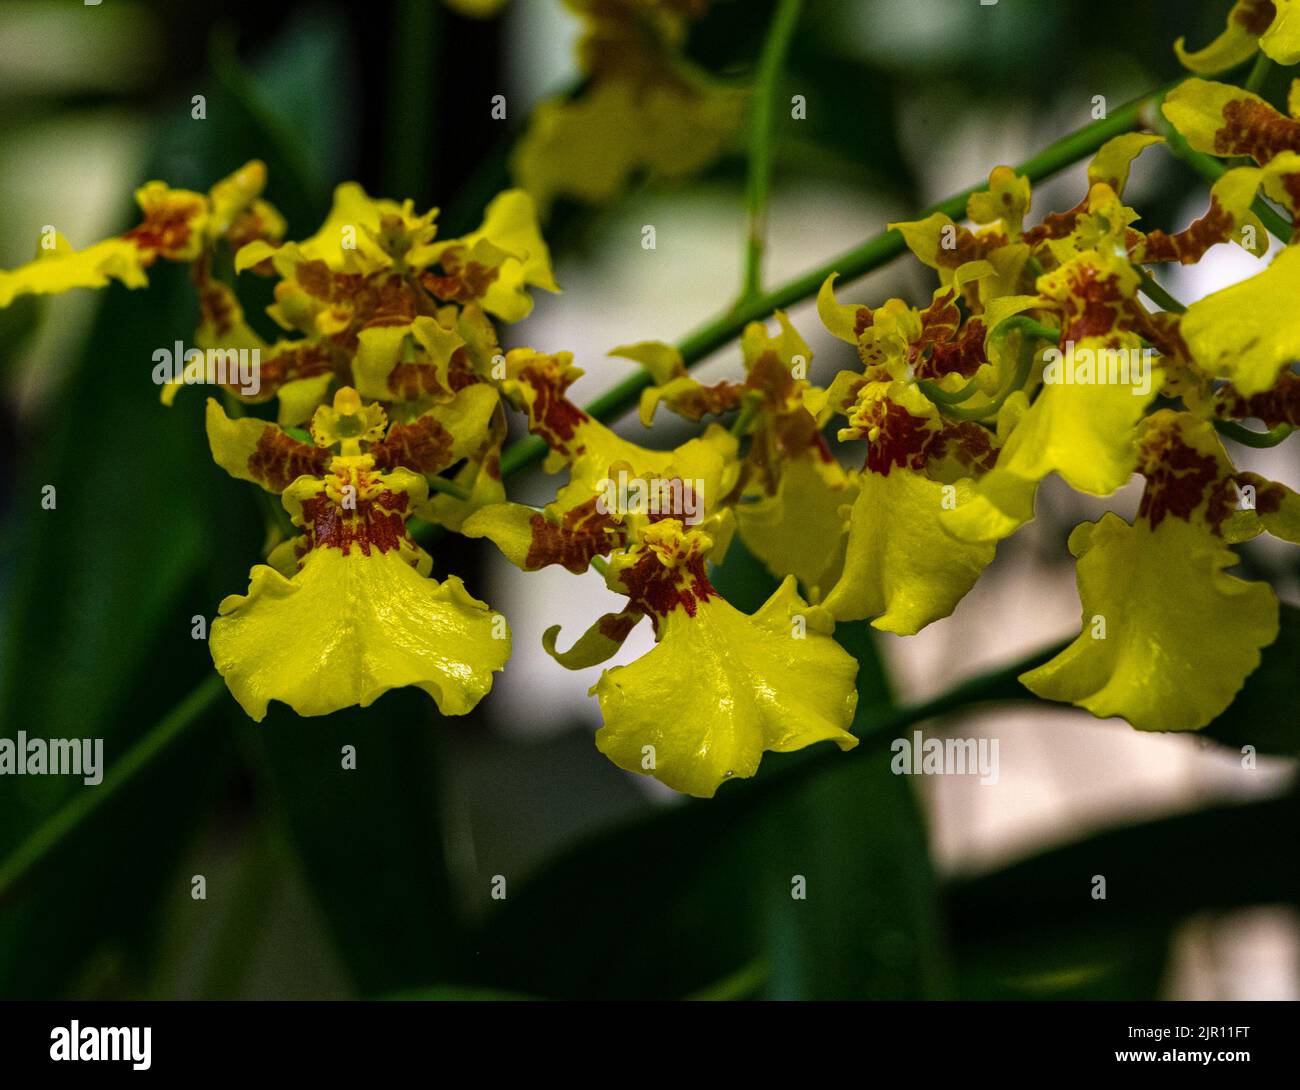 Oncidium flexuosum or Oncidium varicosum or Dancing-lady orchid flowers. Stock Photo